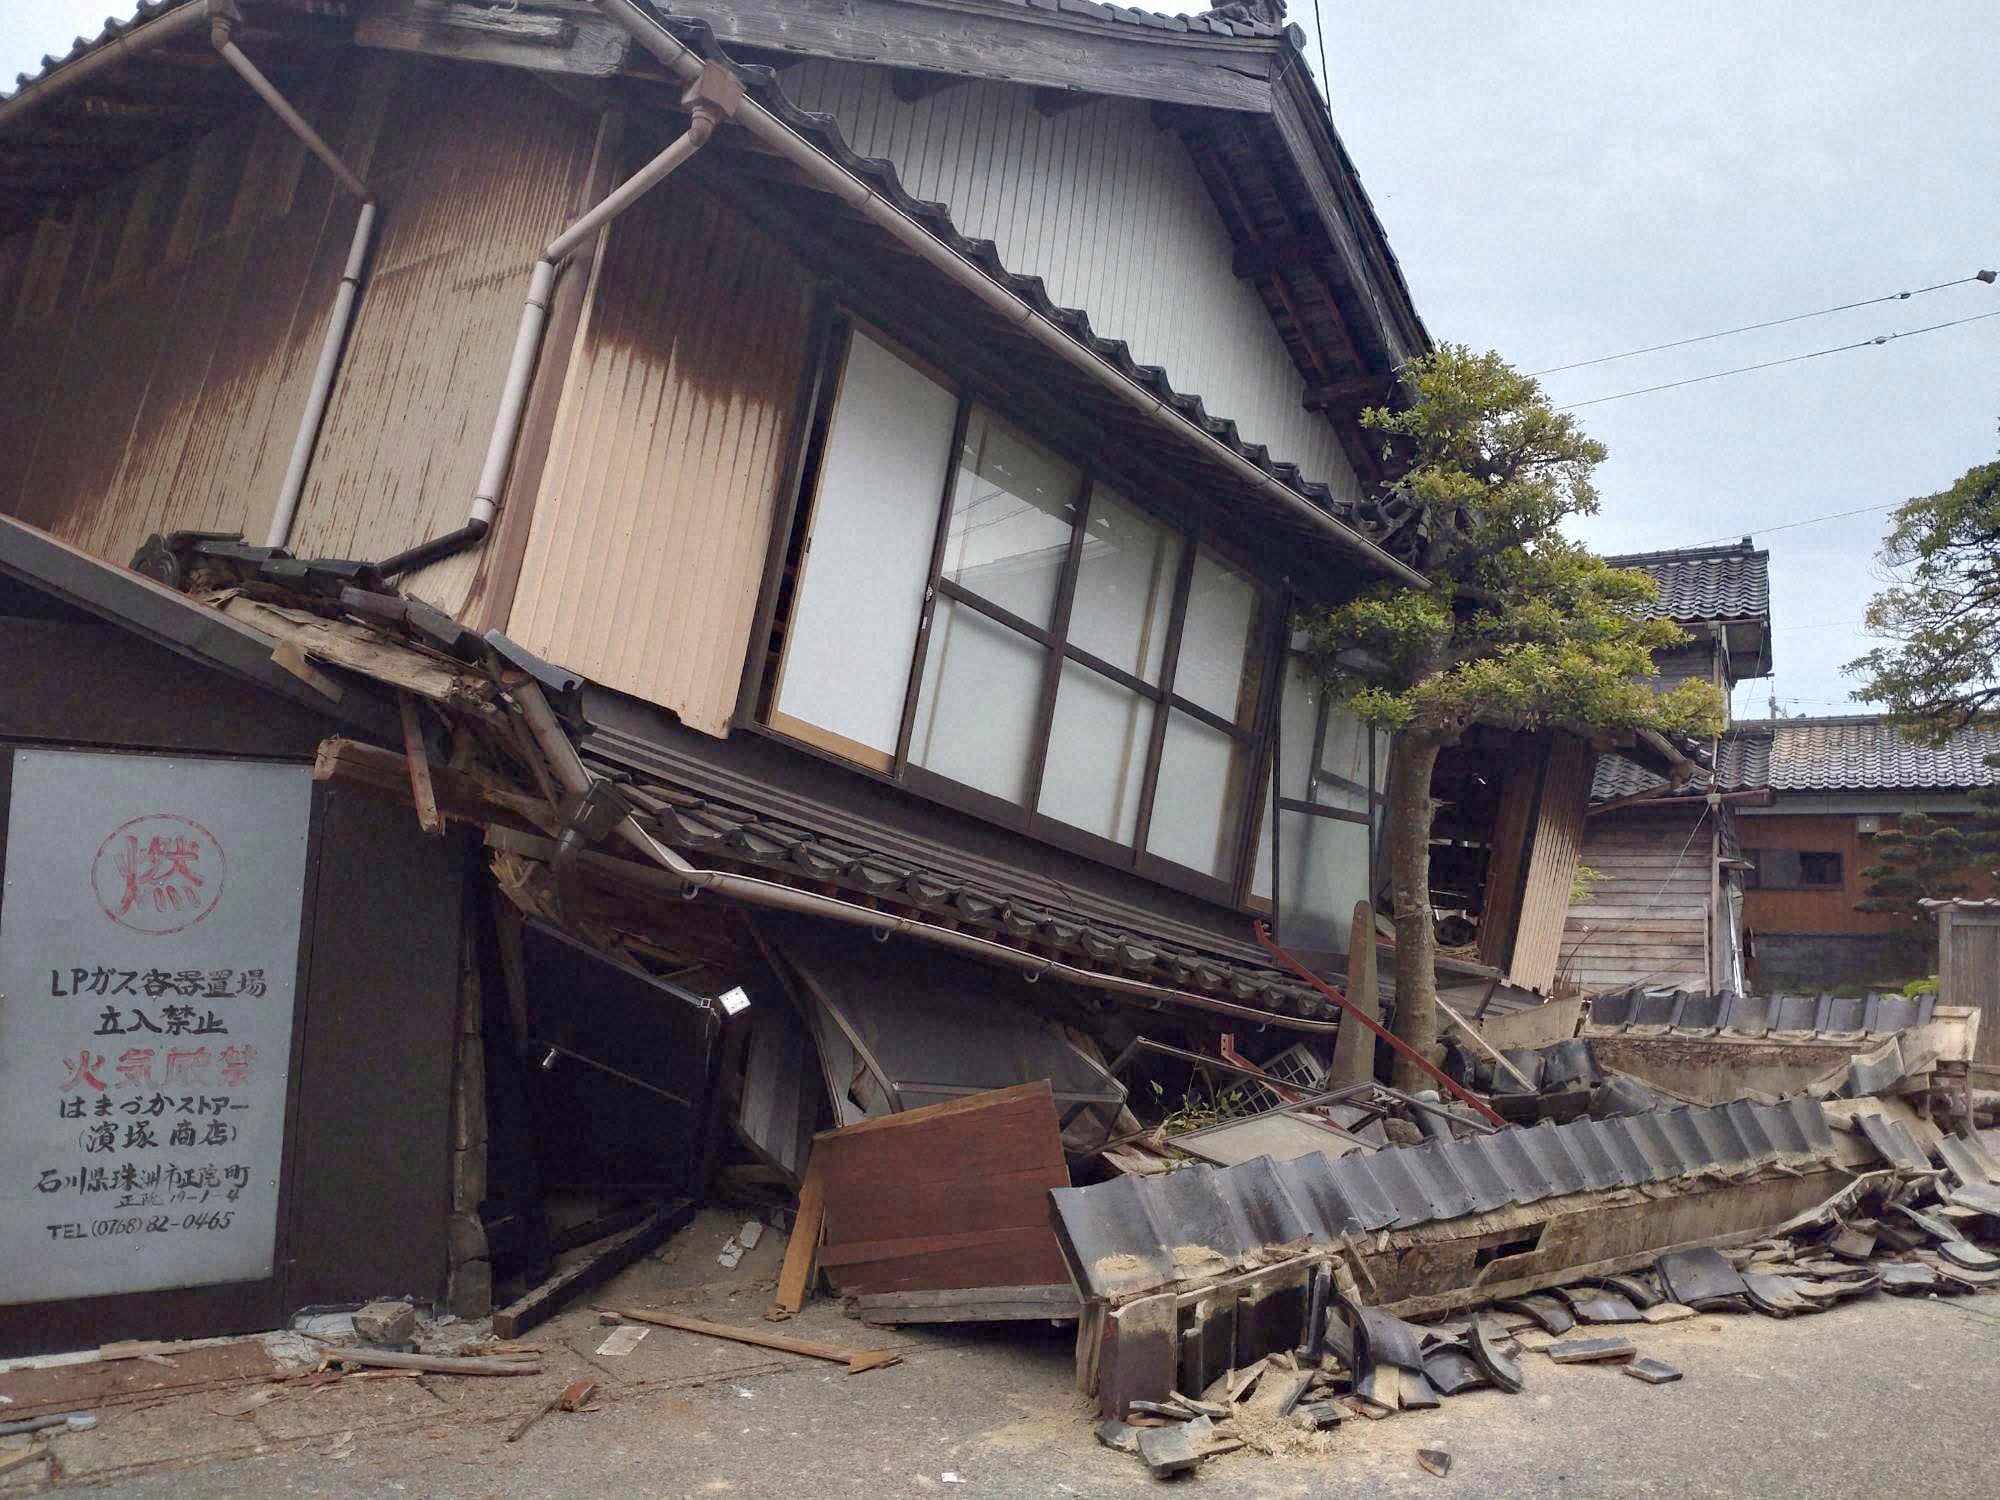 石川県で 大きな地震が起きた | 一般社団法人スローコミュニケーション